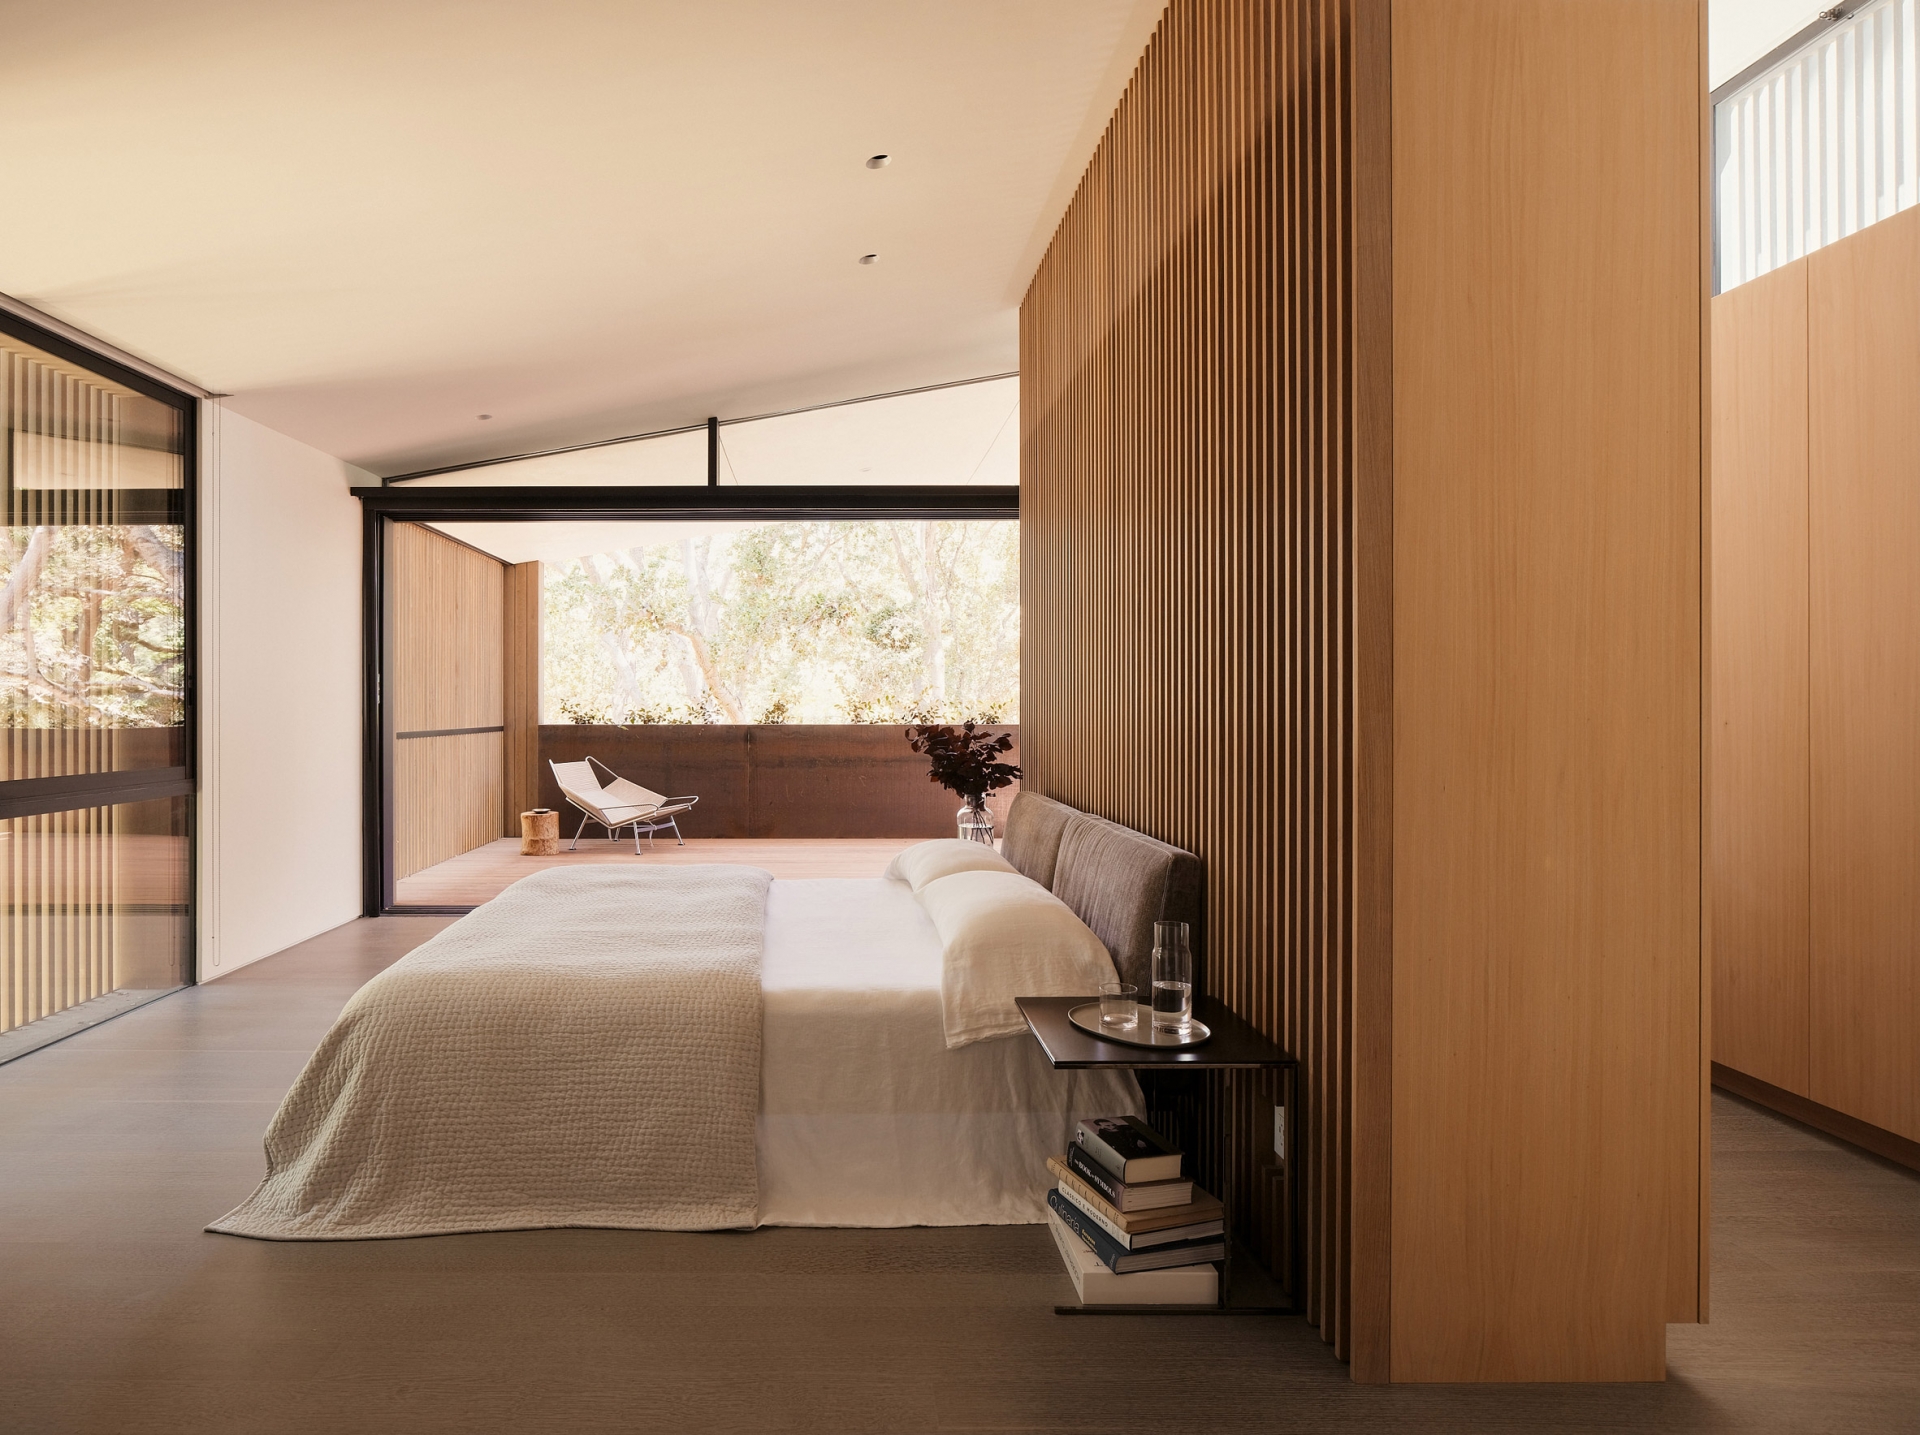 Phòng ngủ đơn giản nhưng xinh xắn, phân tách với góc thư giãn bằng cửa kính trong suốt, vì thế có thể đón nhận ánh sáng tự nhiên thông suốt cả căn phòng.